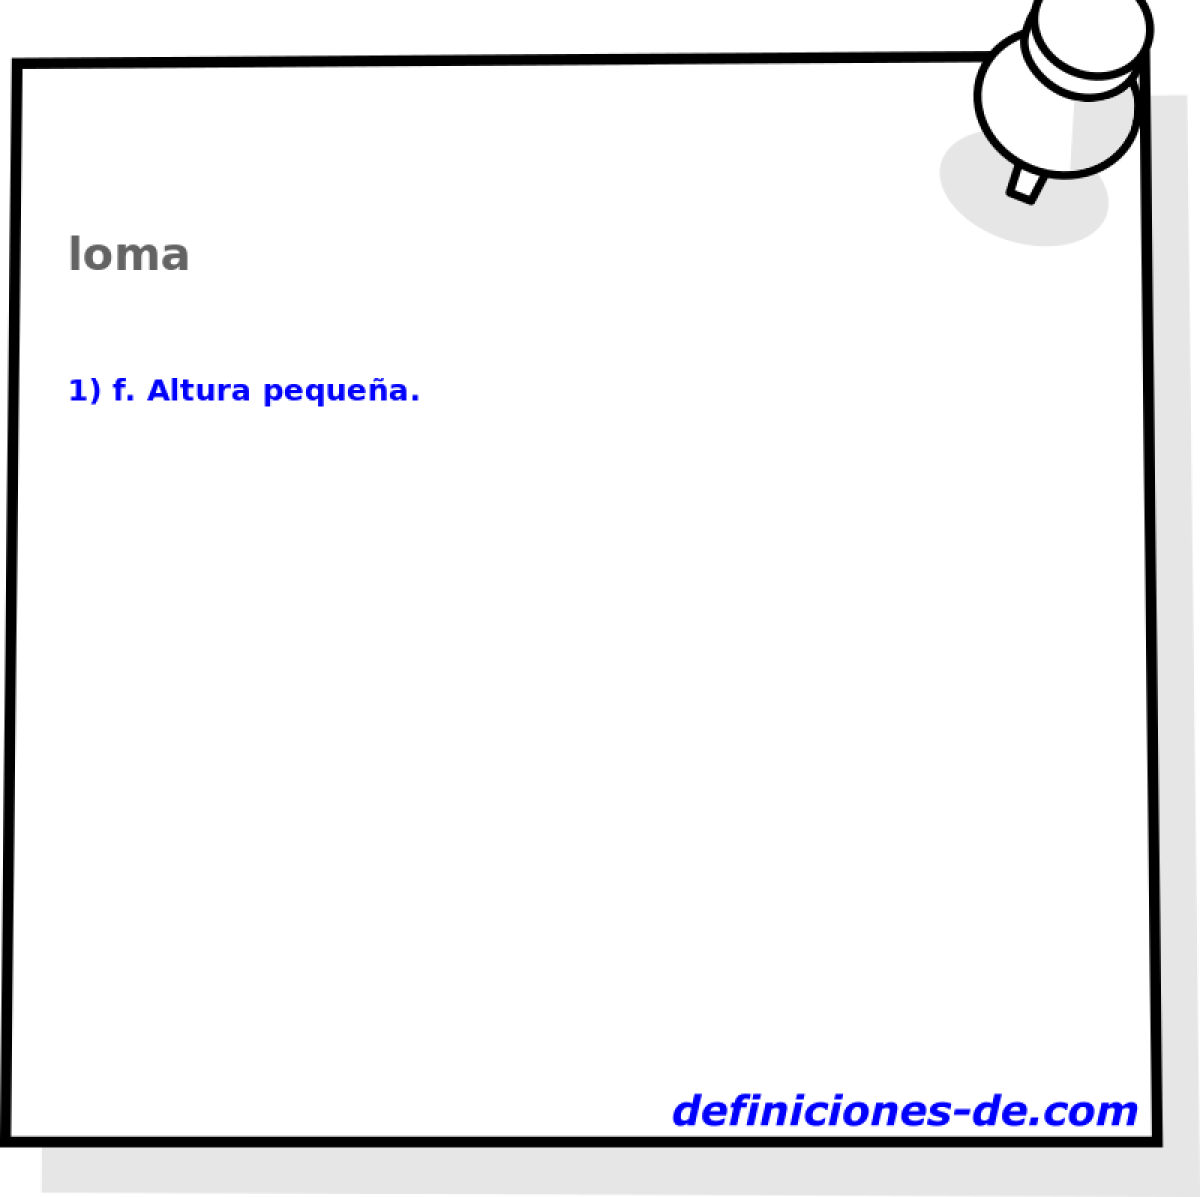 loma 